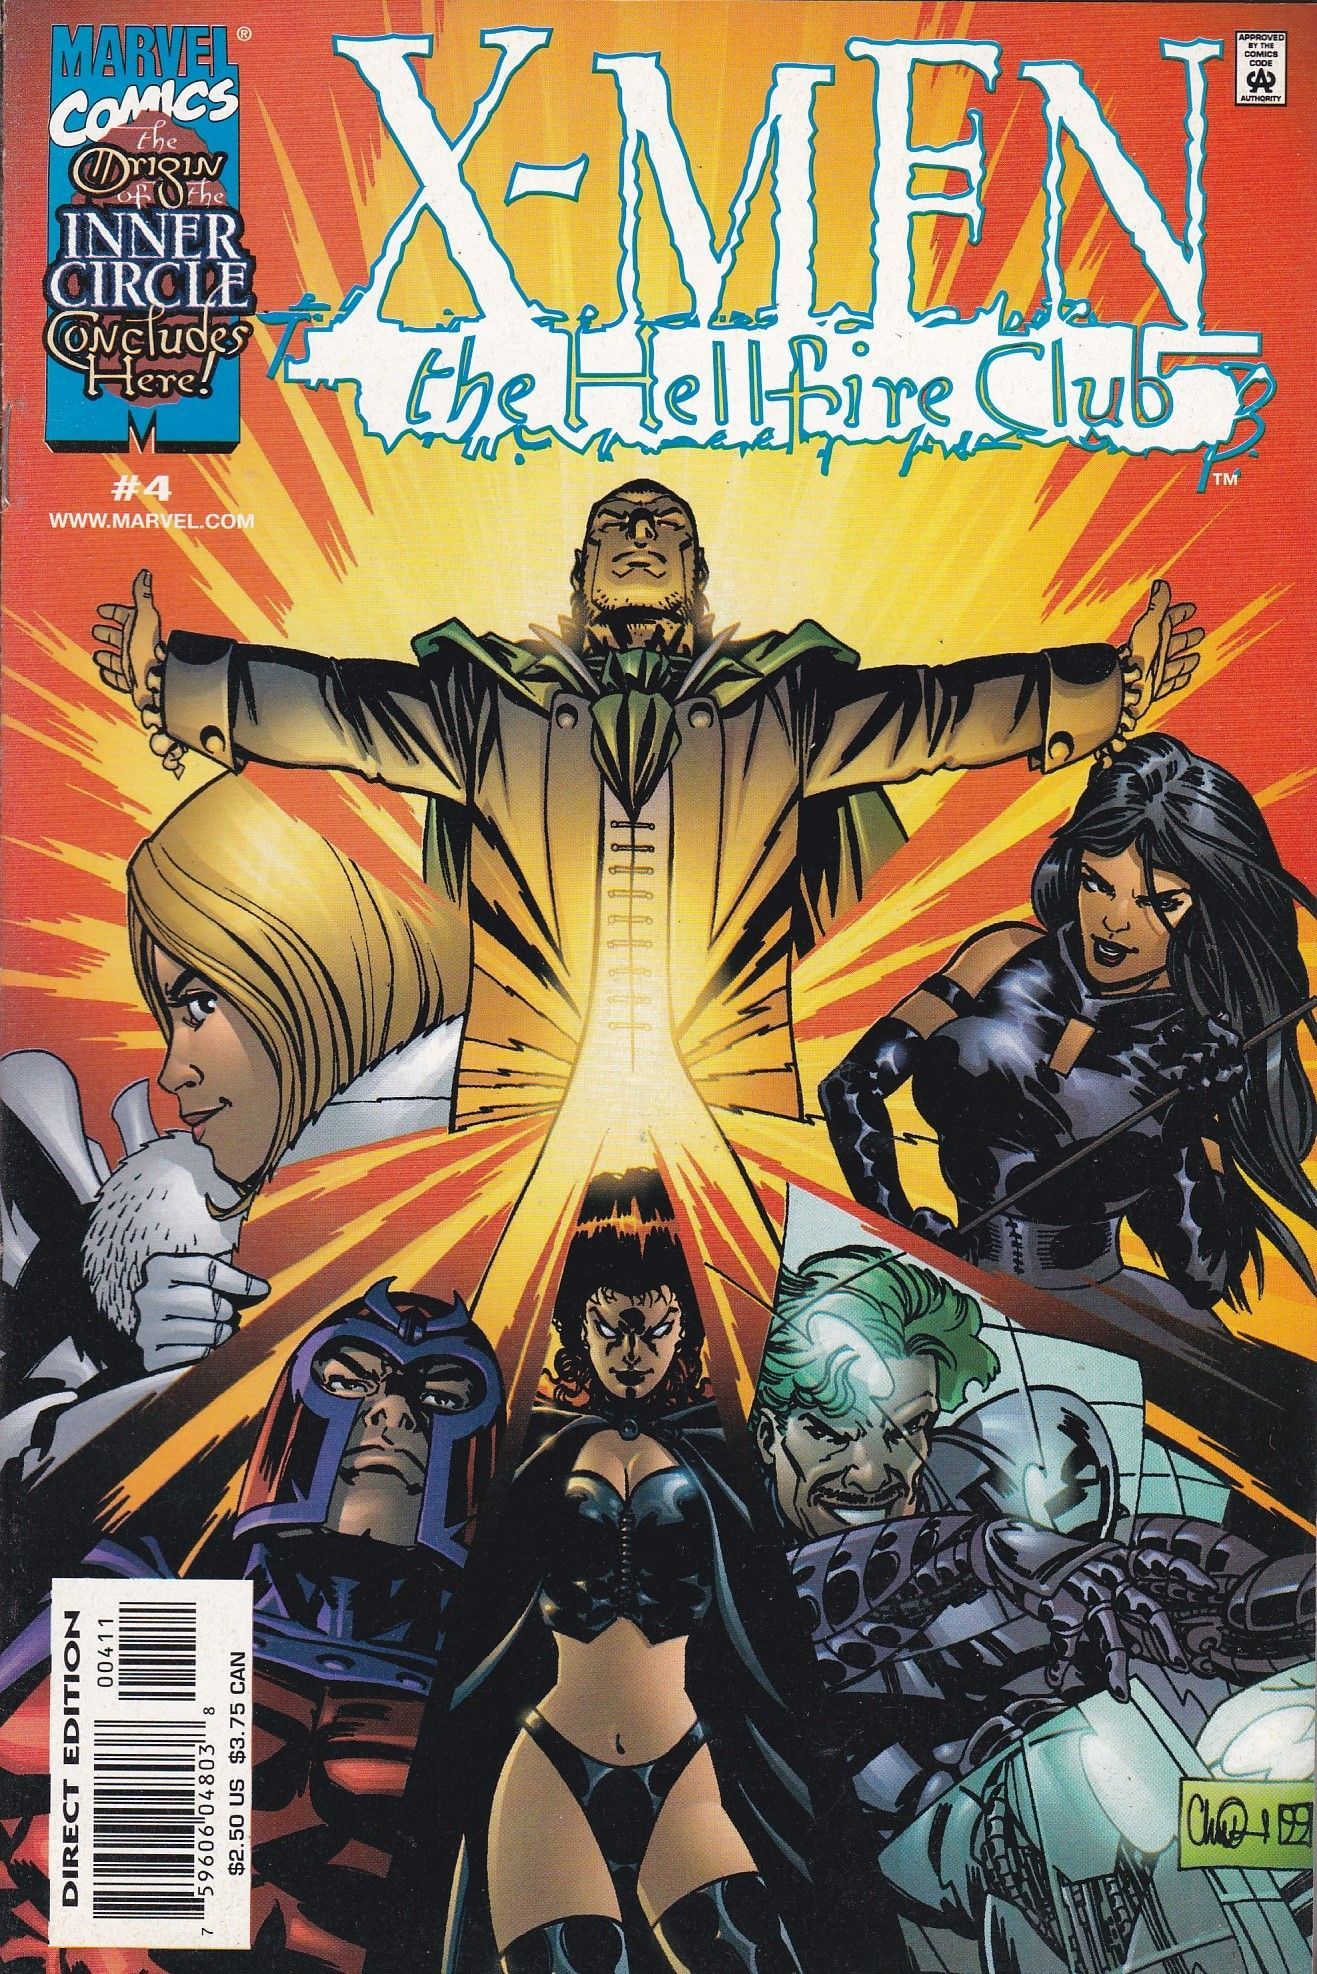 X Men: Hellfire Club # 4 Marvel Comics. Comics, Marvel Comics, X Men